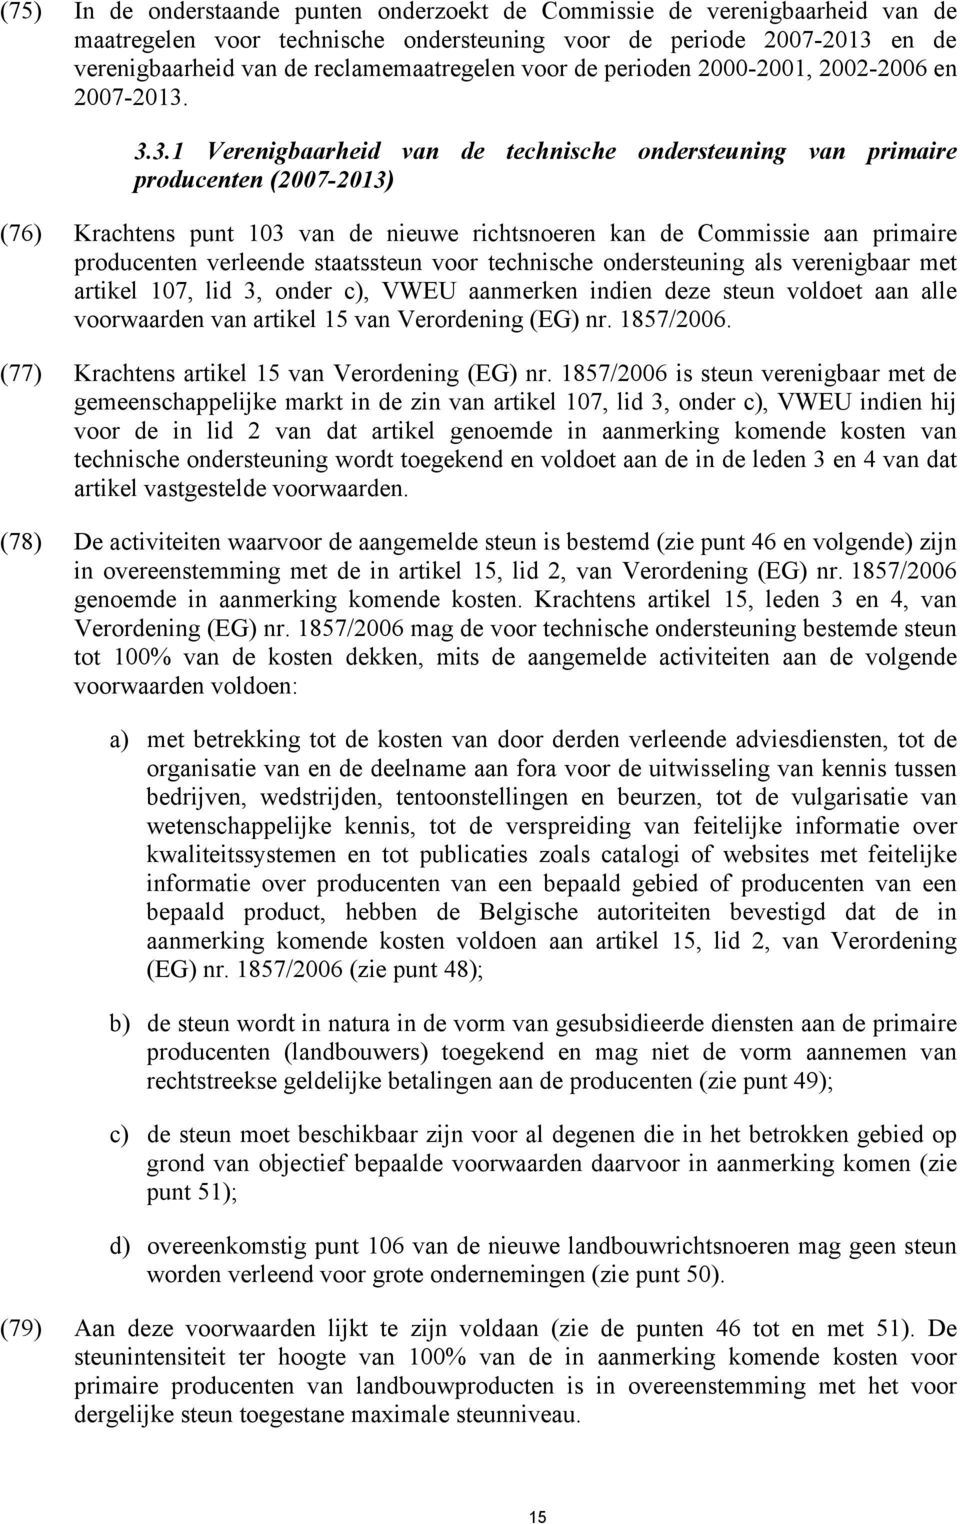 3.3.1 Verenigbaarheid van de technische ondersteuning van primaire producenten (2007-2013) (76) Krachtens punt 103 van de nieuwe richtsnoeren kan de Commissie aan primaire producenten verleende